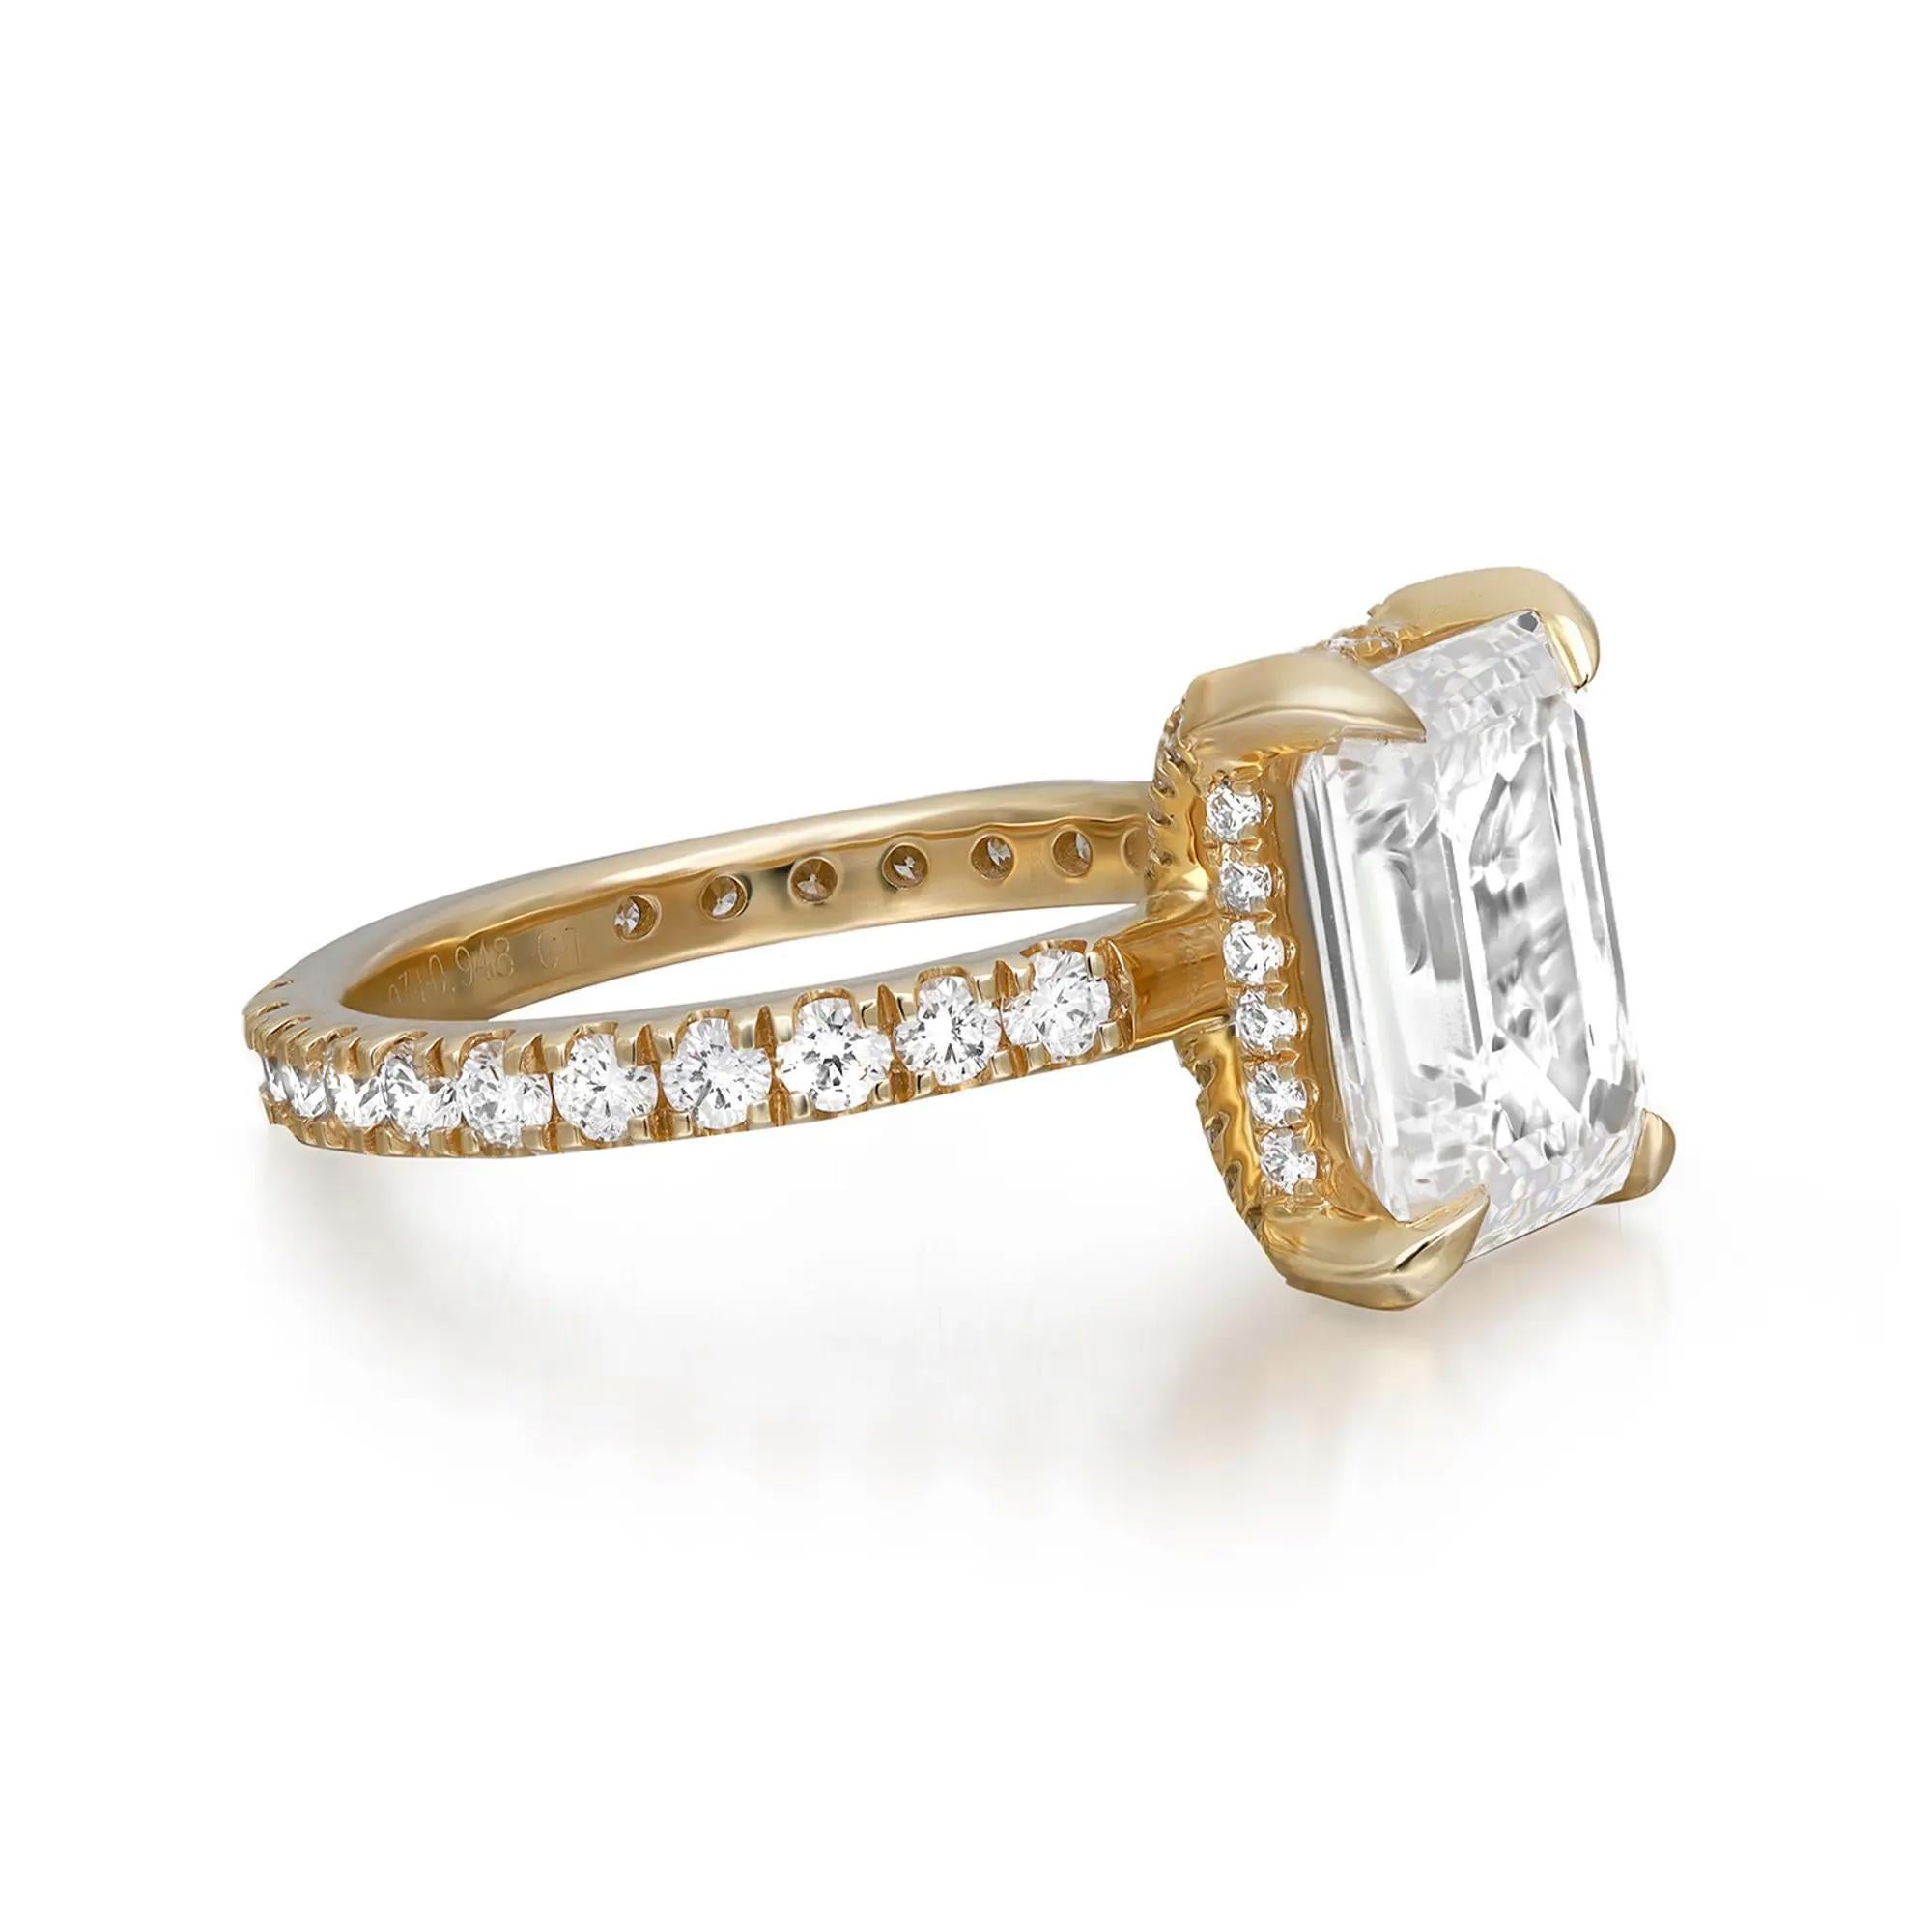 Este encantador anillo está adornado con un brillante diamante cultivado en laboratorio con certificado GIA de talla esmeralda en el centro, firmemente sujeto en un hermoso engaste de cuatro garras y un clásico cuerpo de diamante que da el toque